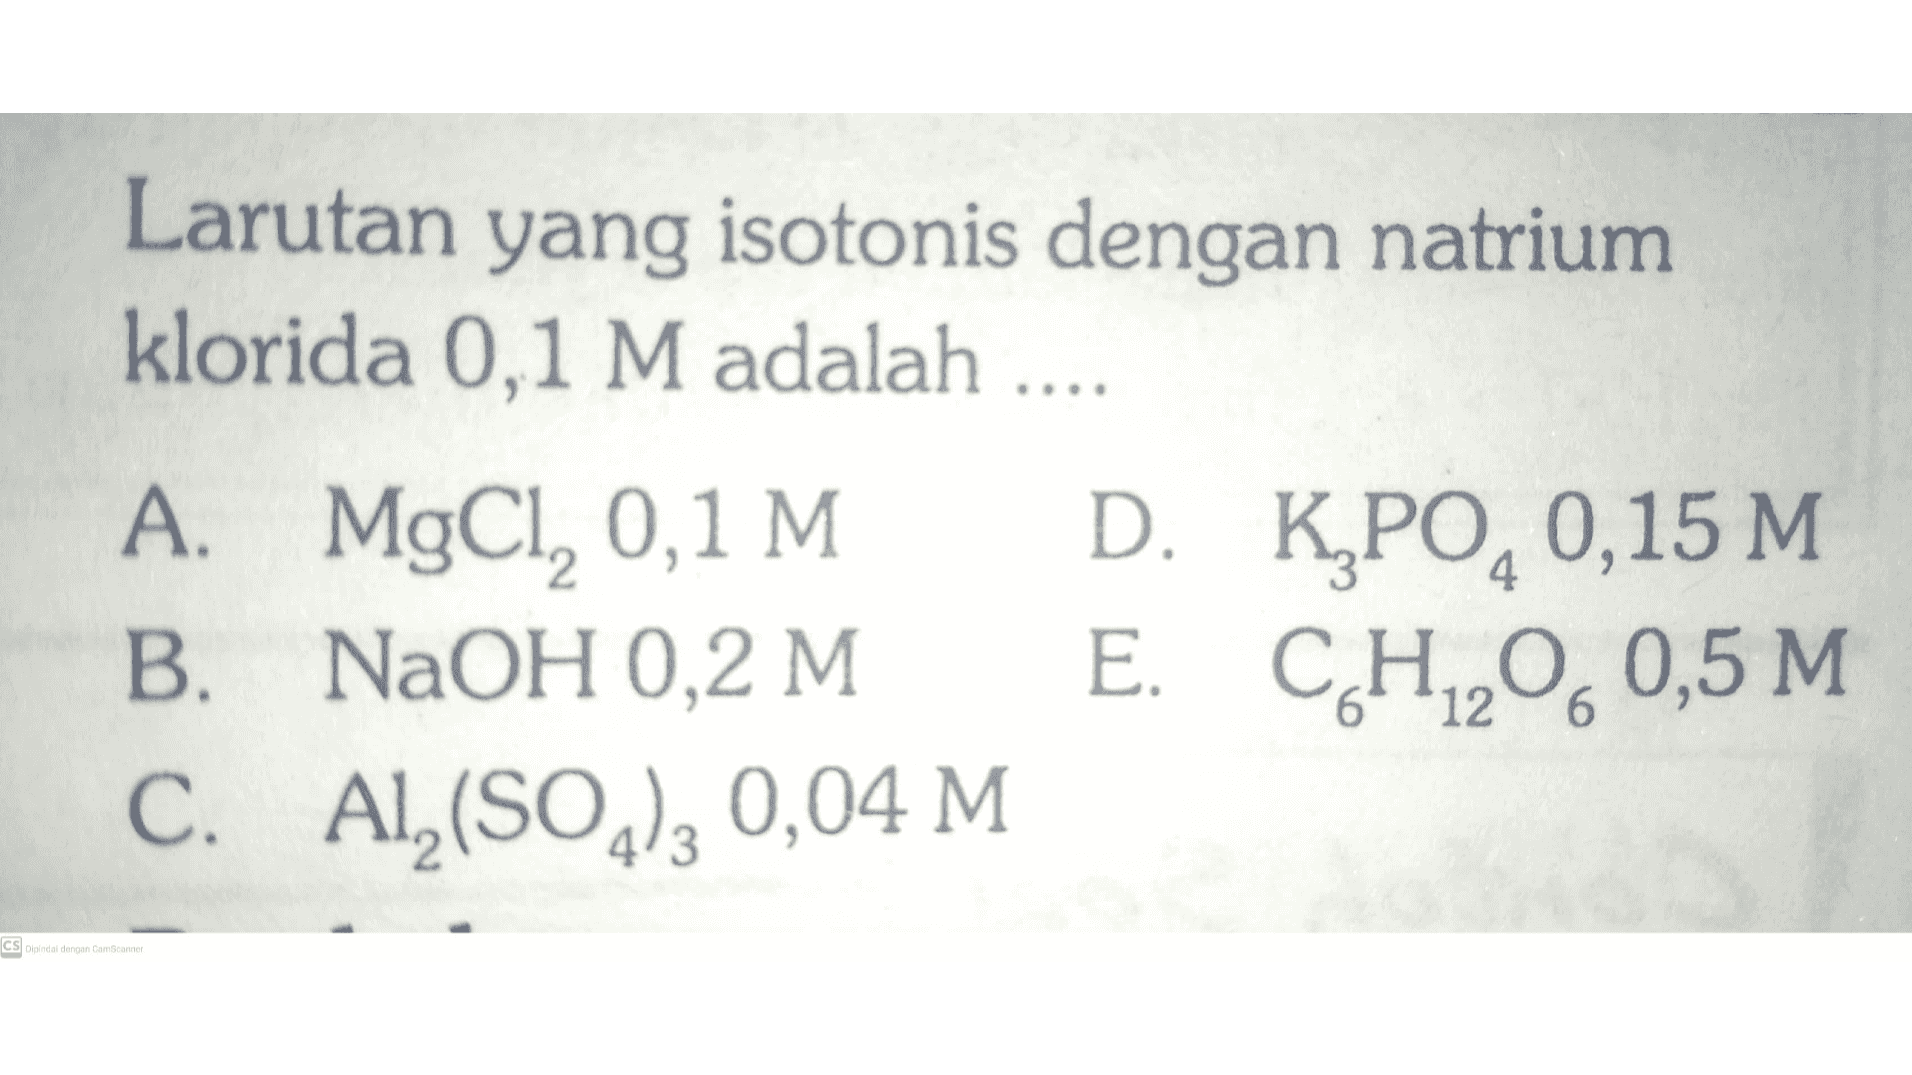 Larutan yang isotonis dengan natrium klorida 0,1 M adalah .... A. MgCl, 0,1 M D. K PO,0,15 M B. NaOH 0,2 M E. CH2060,5 M C. Al(SO2)3 0,04 M CS Dipindal dengan CamScanner 